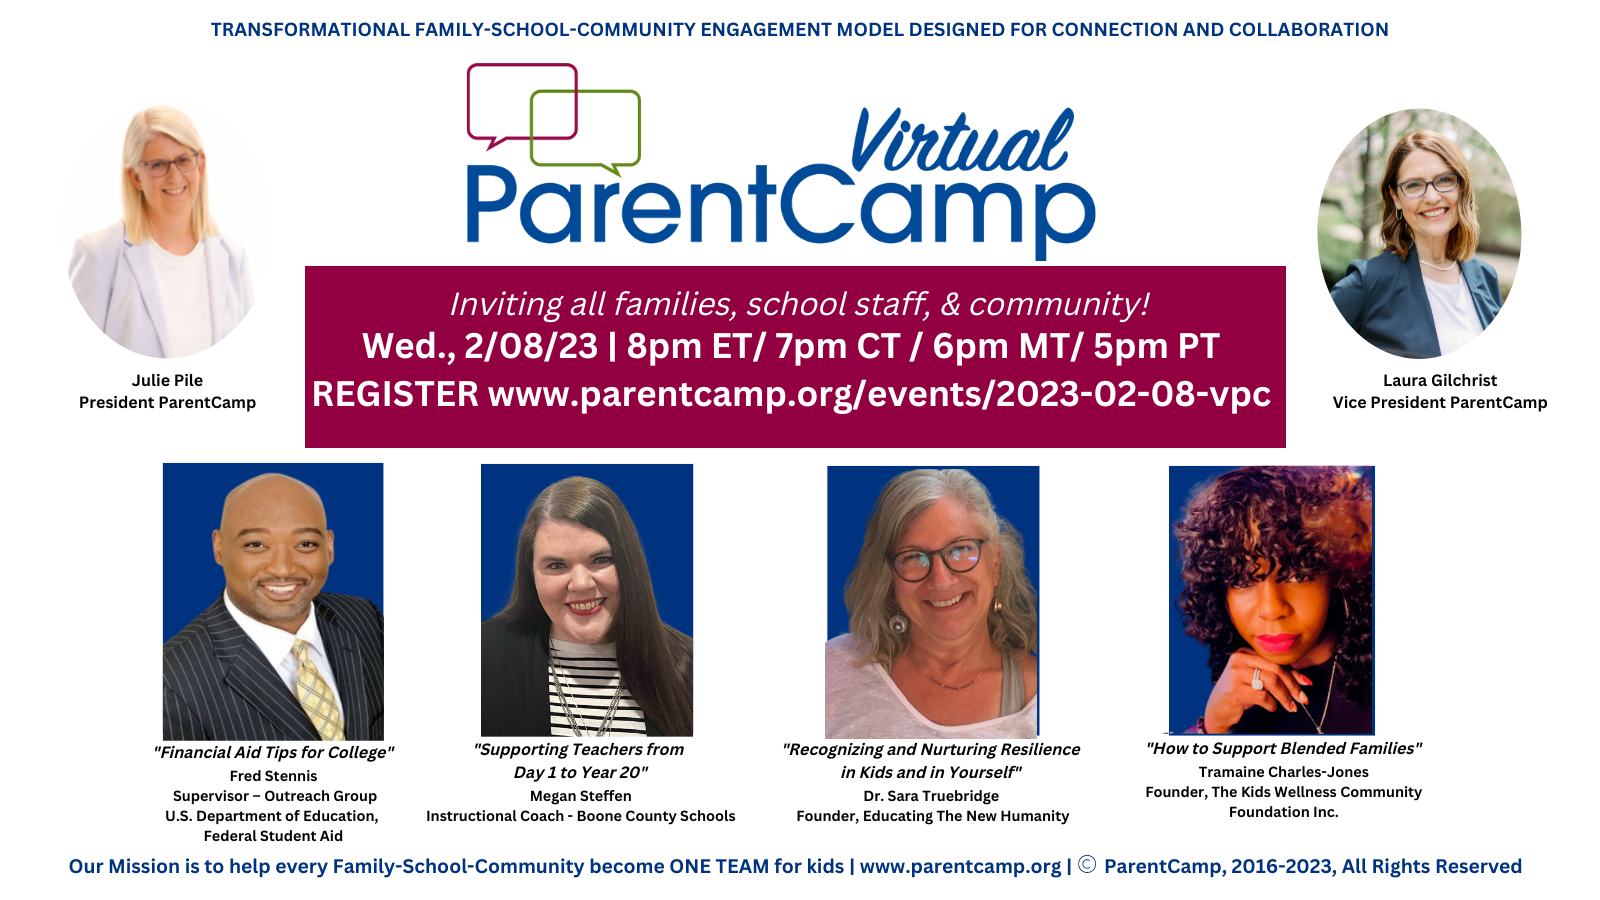 Virtual ParentCamp 2/8